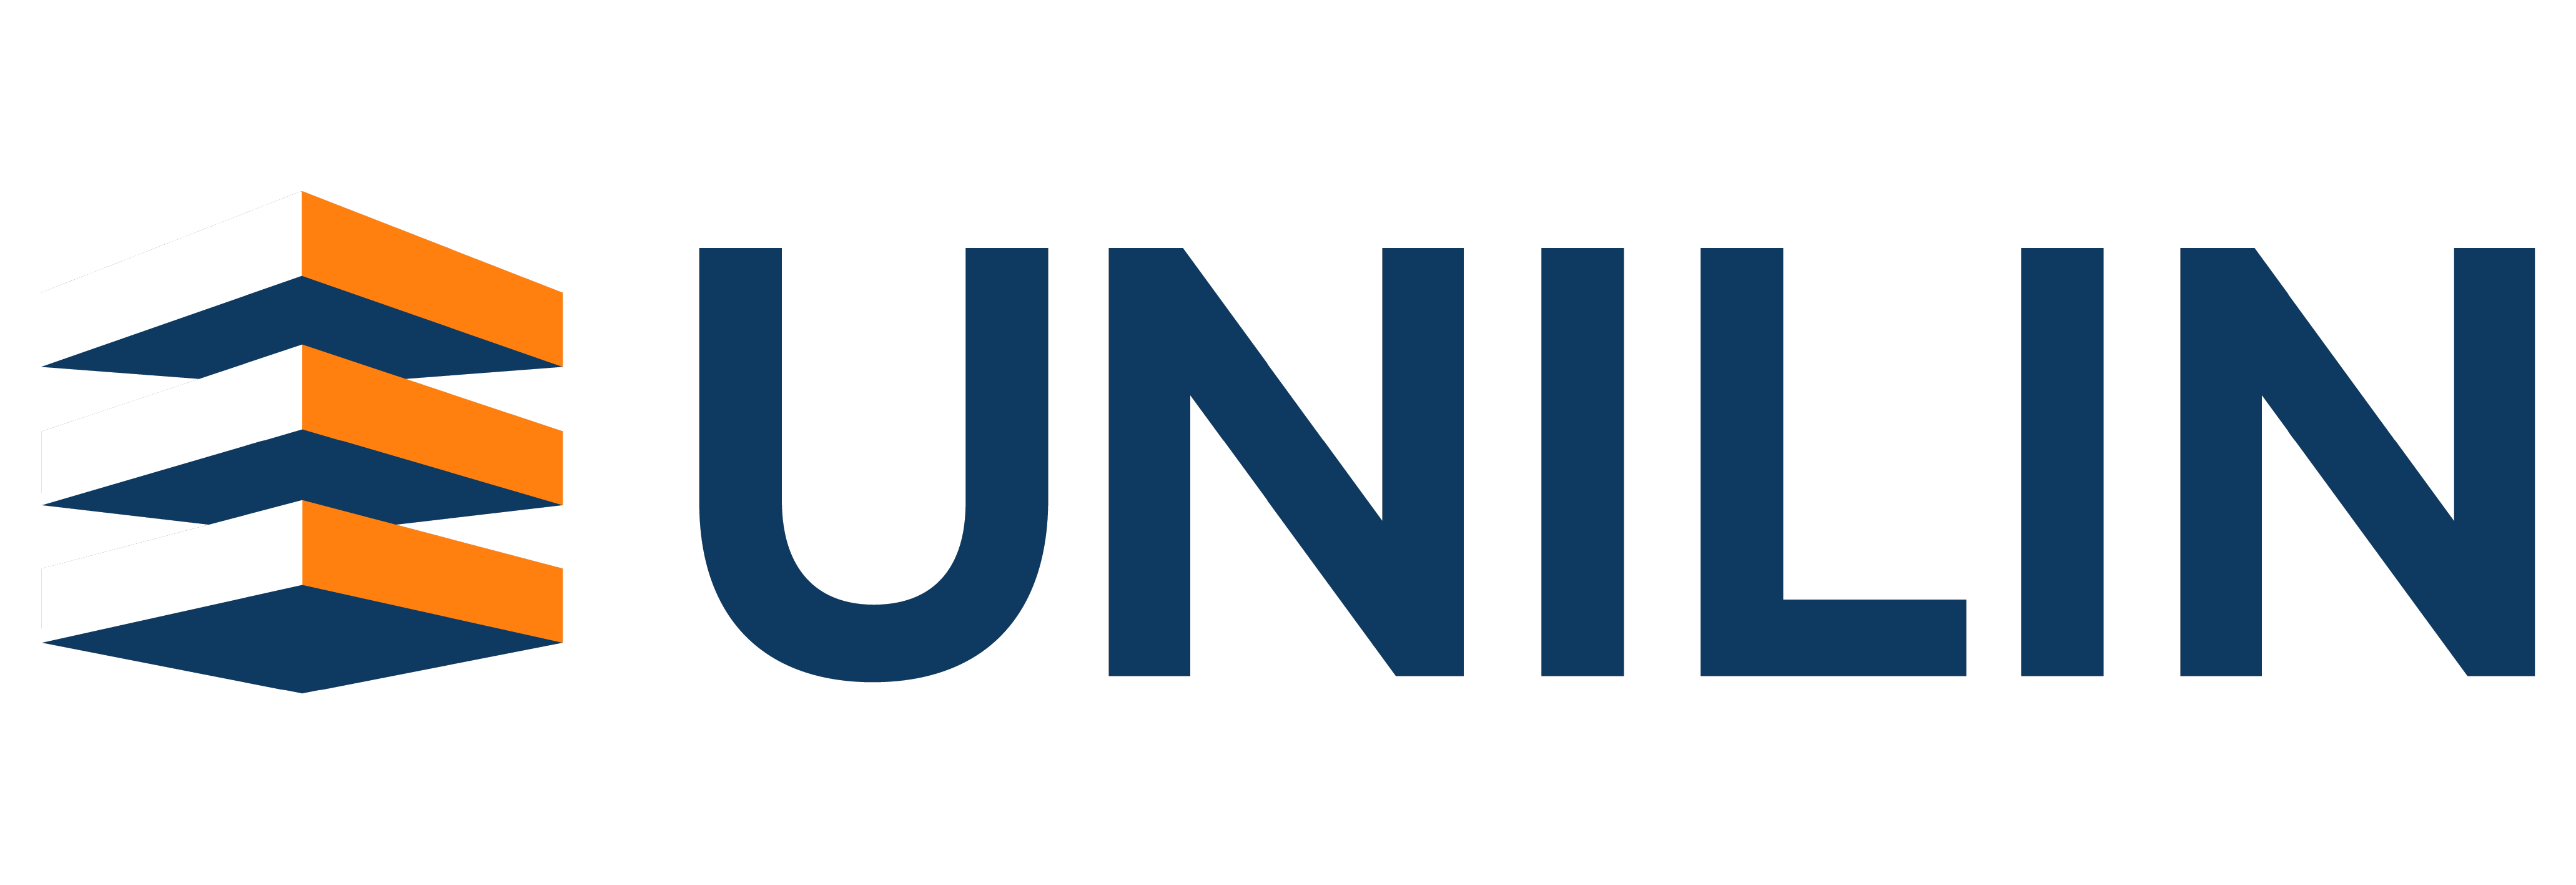 Unilin logo partner of beSteel.